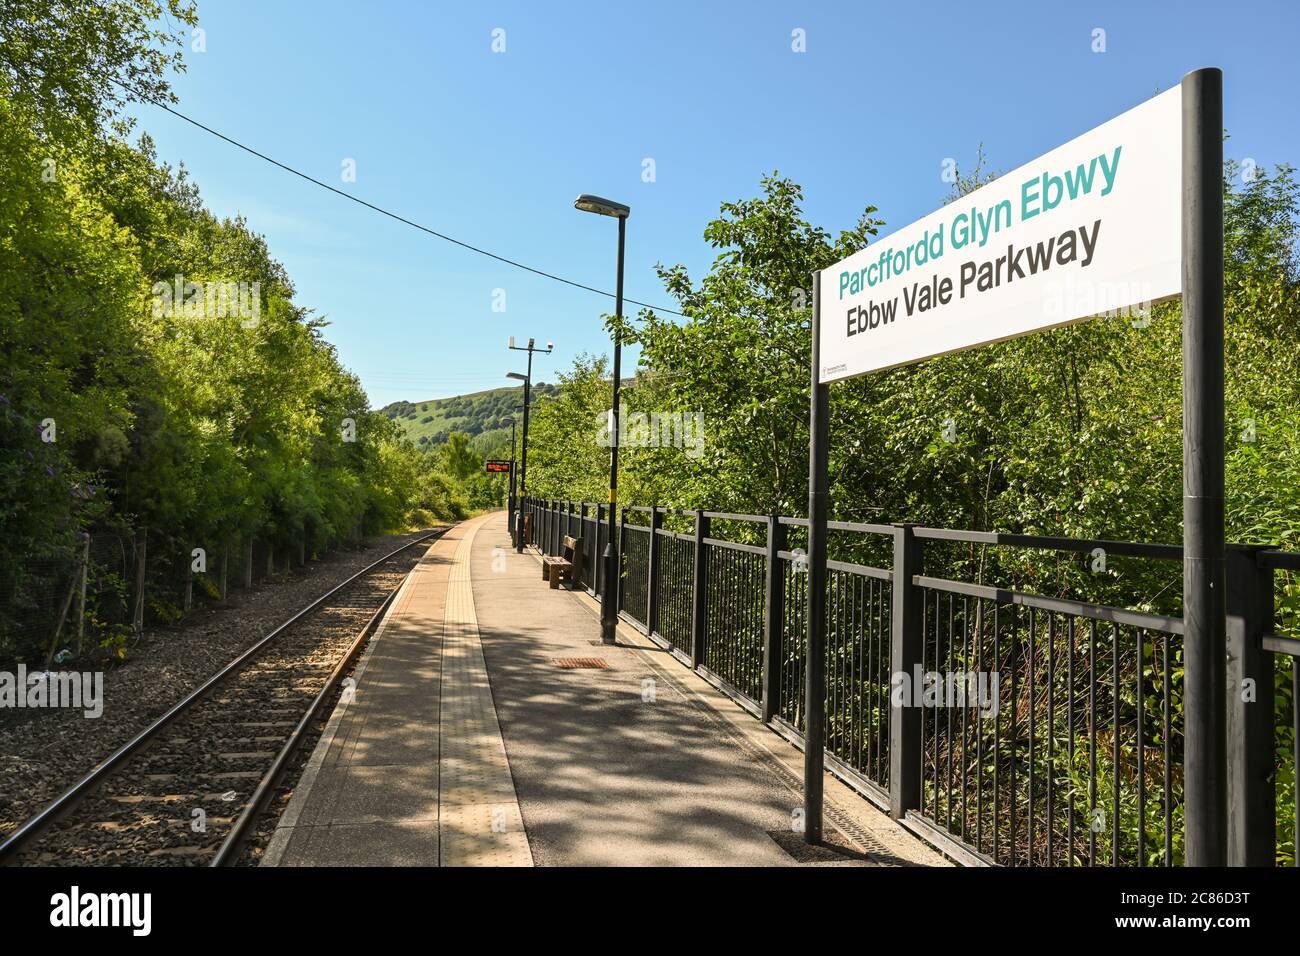 Ebbw Vale, Wales - Juli 2020: Leerer Bahnsteig am Bahnhof Ebbw Vale Parkway. Der Bahnhof liegt am Stadtrand. Stockfoto